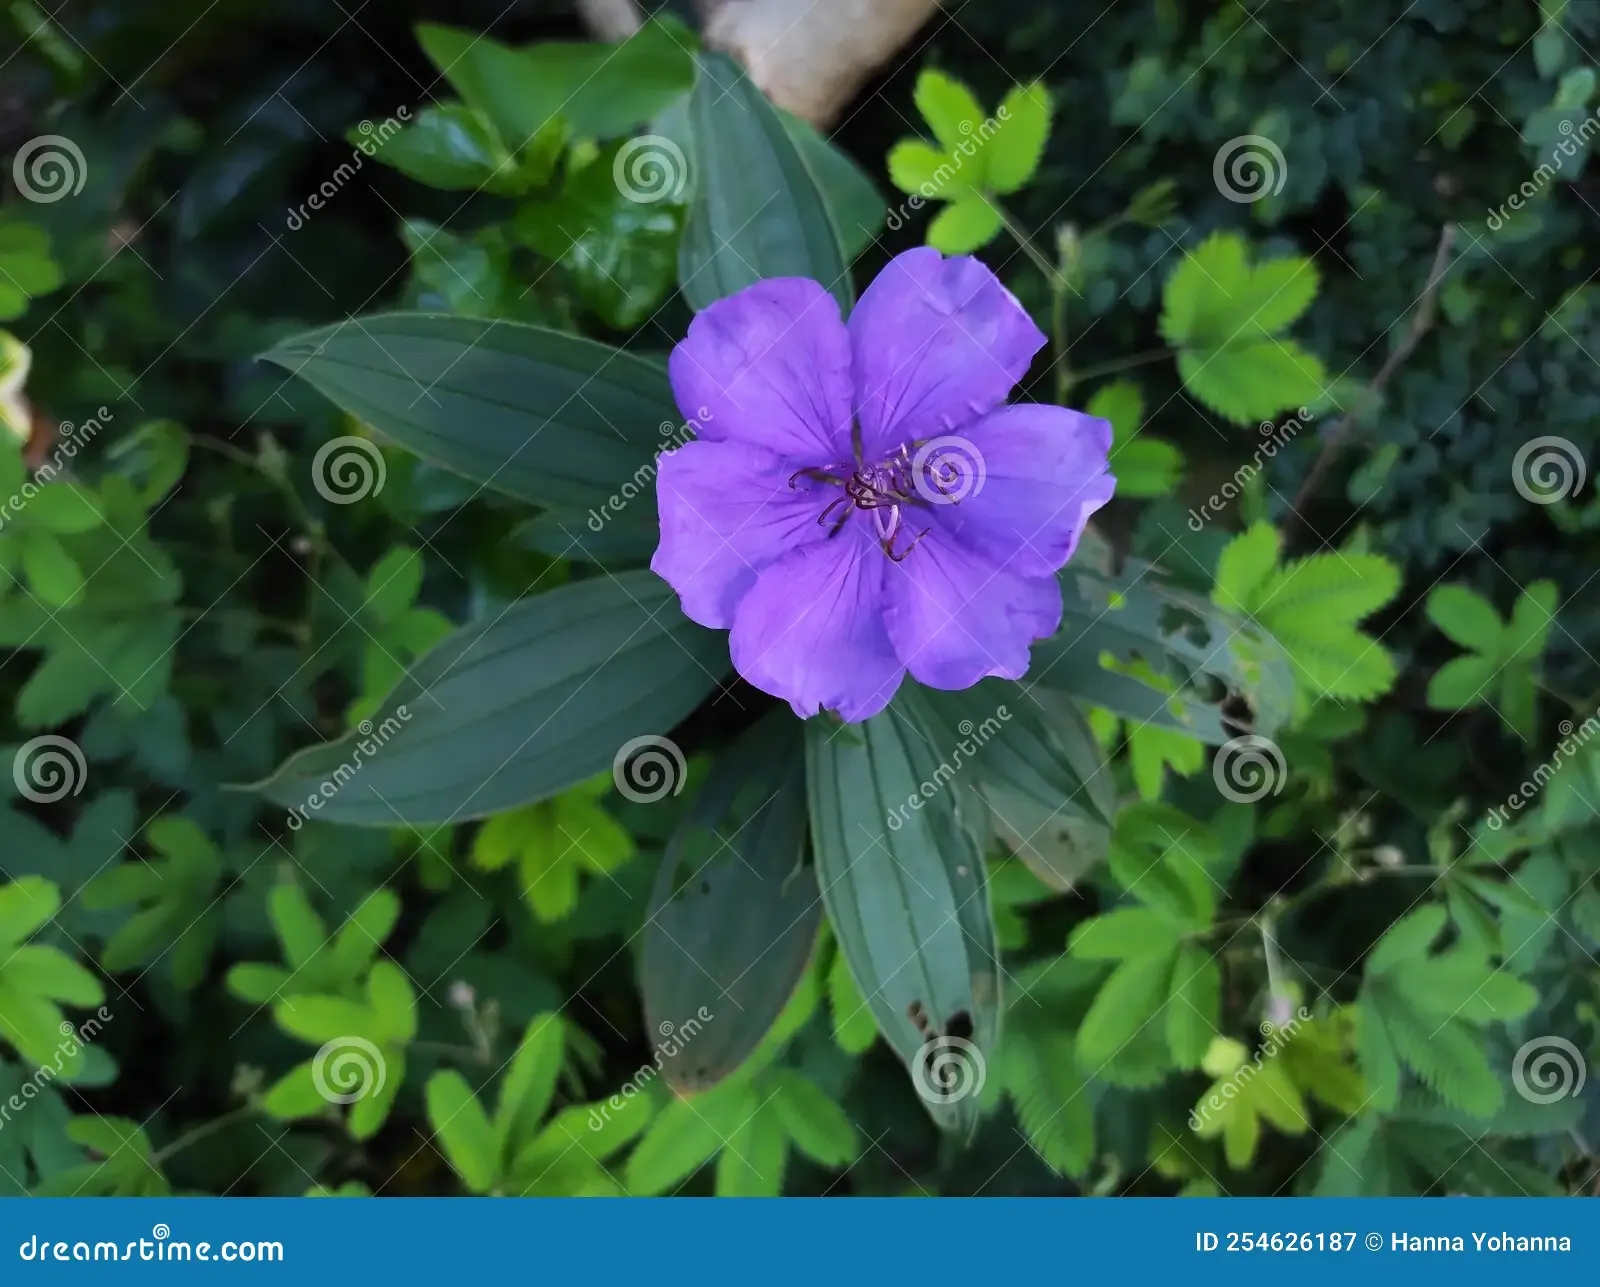 pleroma-urvilleanum-bloom-pleroma-urvilleanum-species-flowering-plant-family-melastomataceae-254626187.jpg